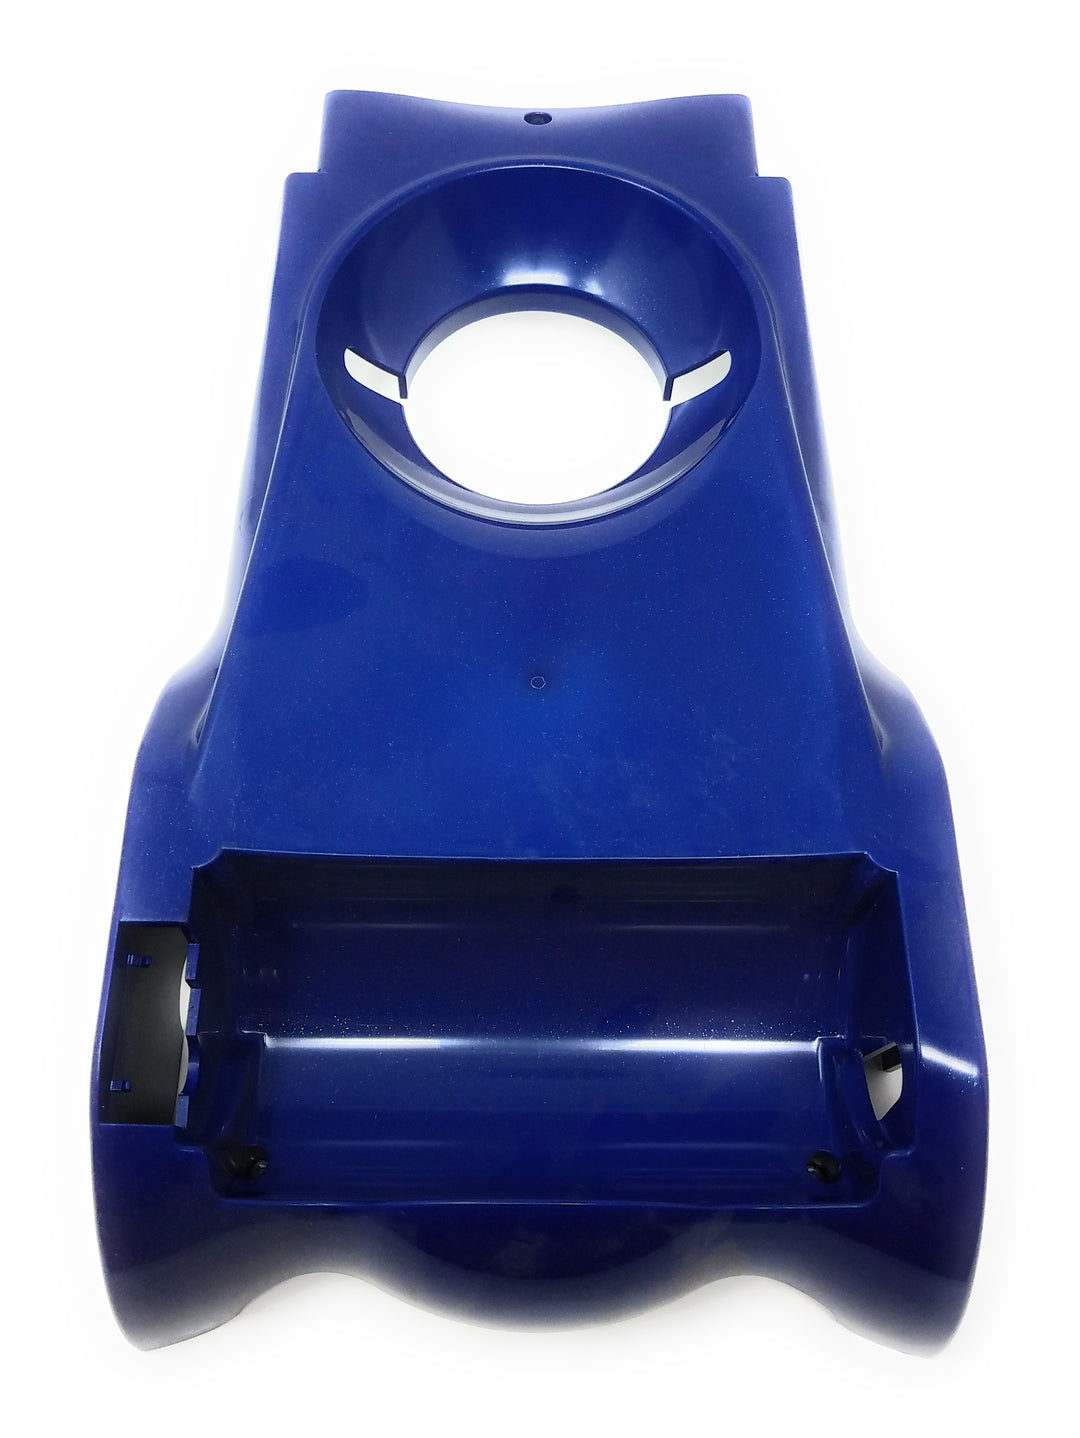 Bottom View of Pentair Racer LS Pressure Side Cleaner Bottom Cover Kit - ePoolSupply